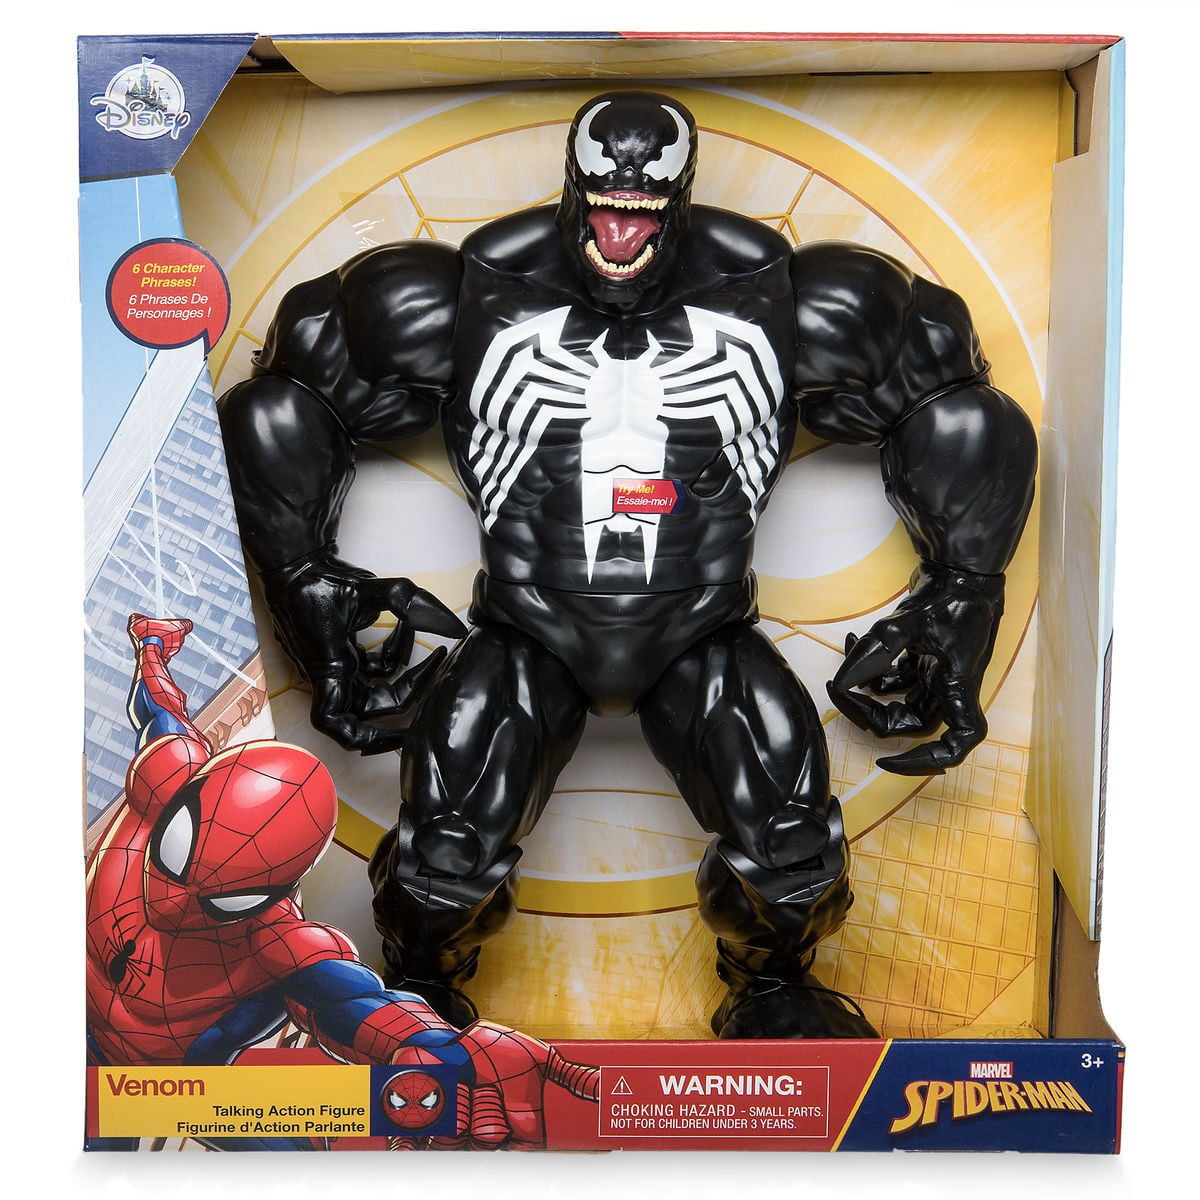 Disney Store Marvel Toybox Spider-Man and Spider-Ham Action Figure Bike  Playset